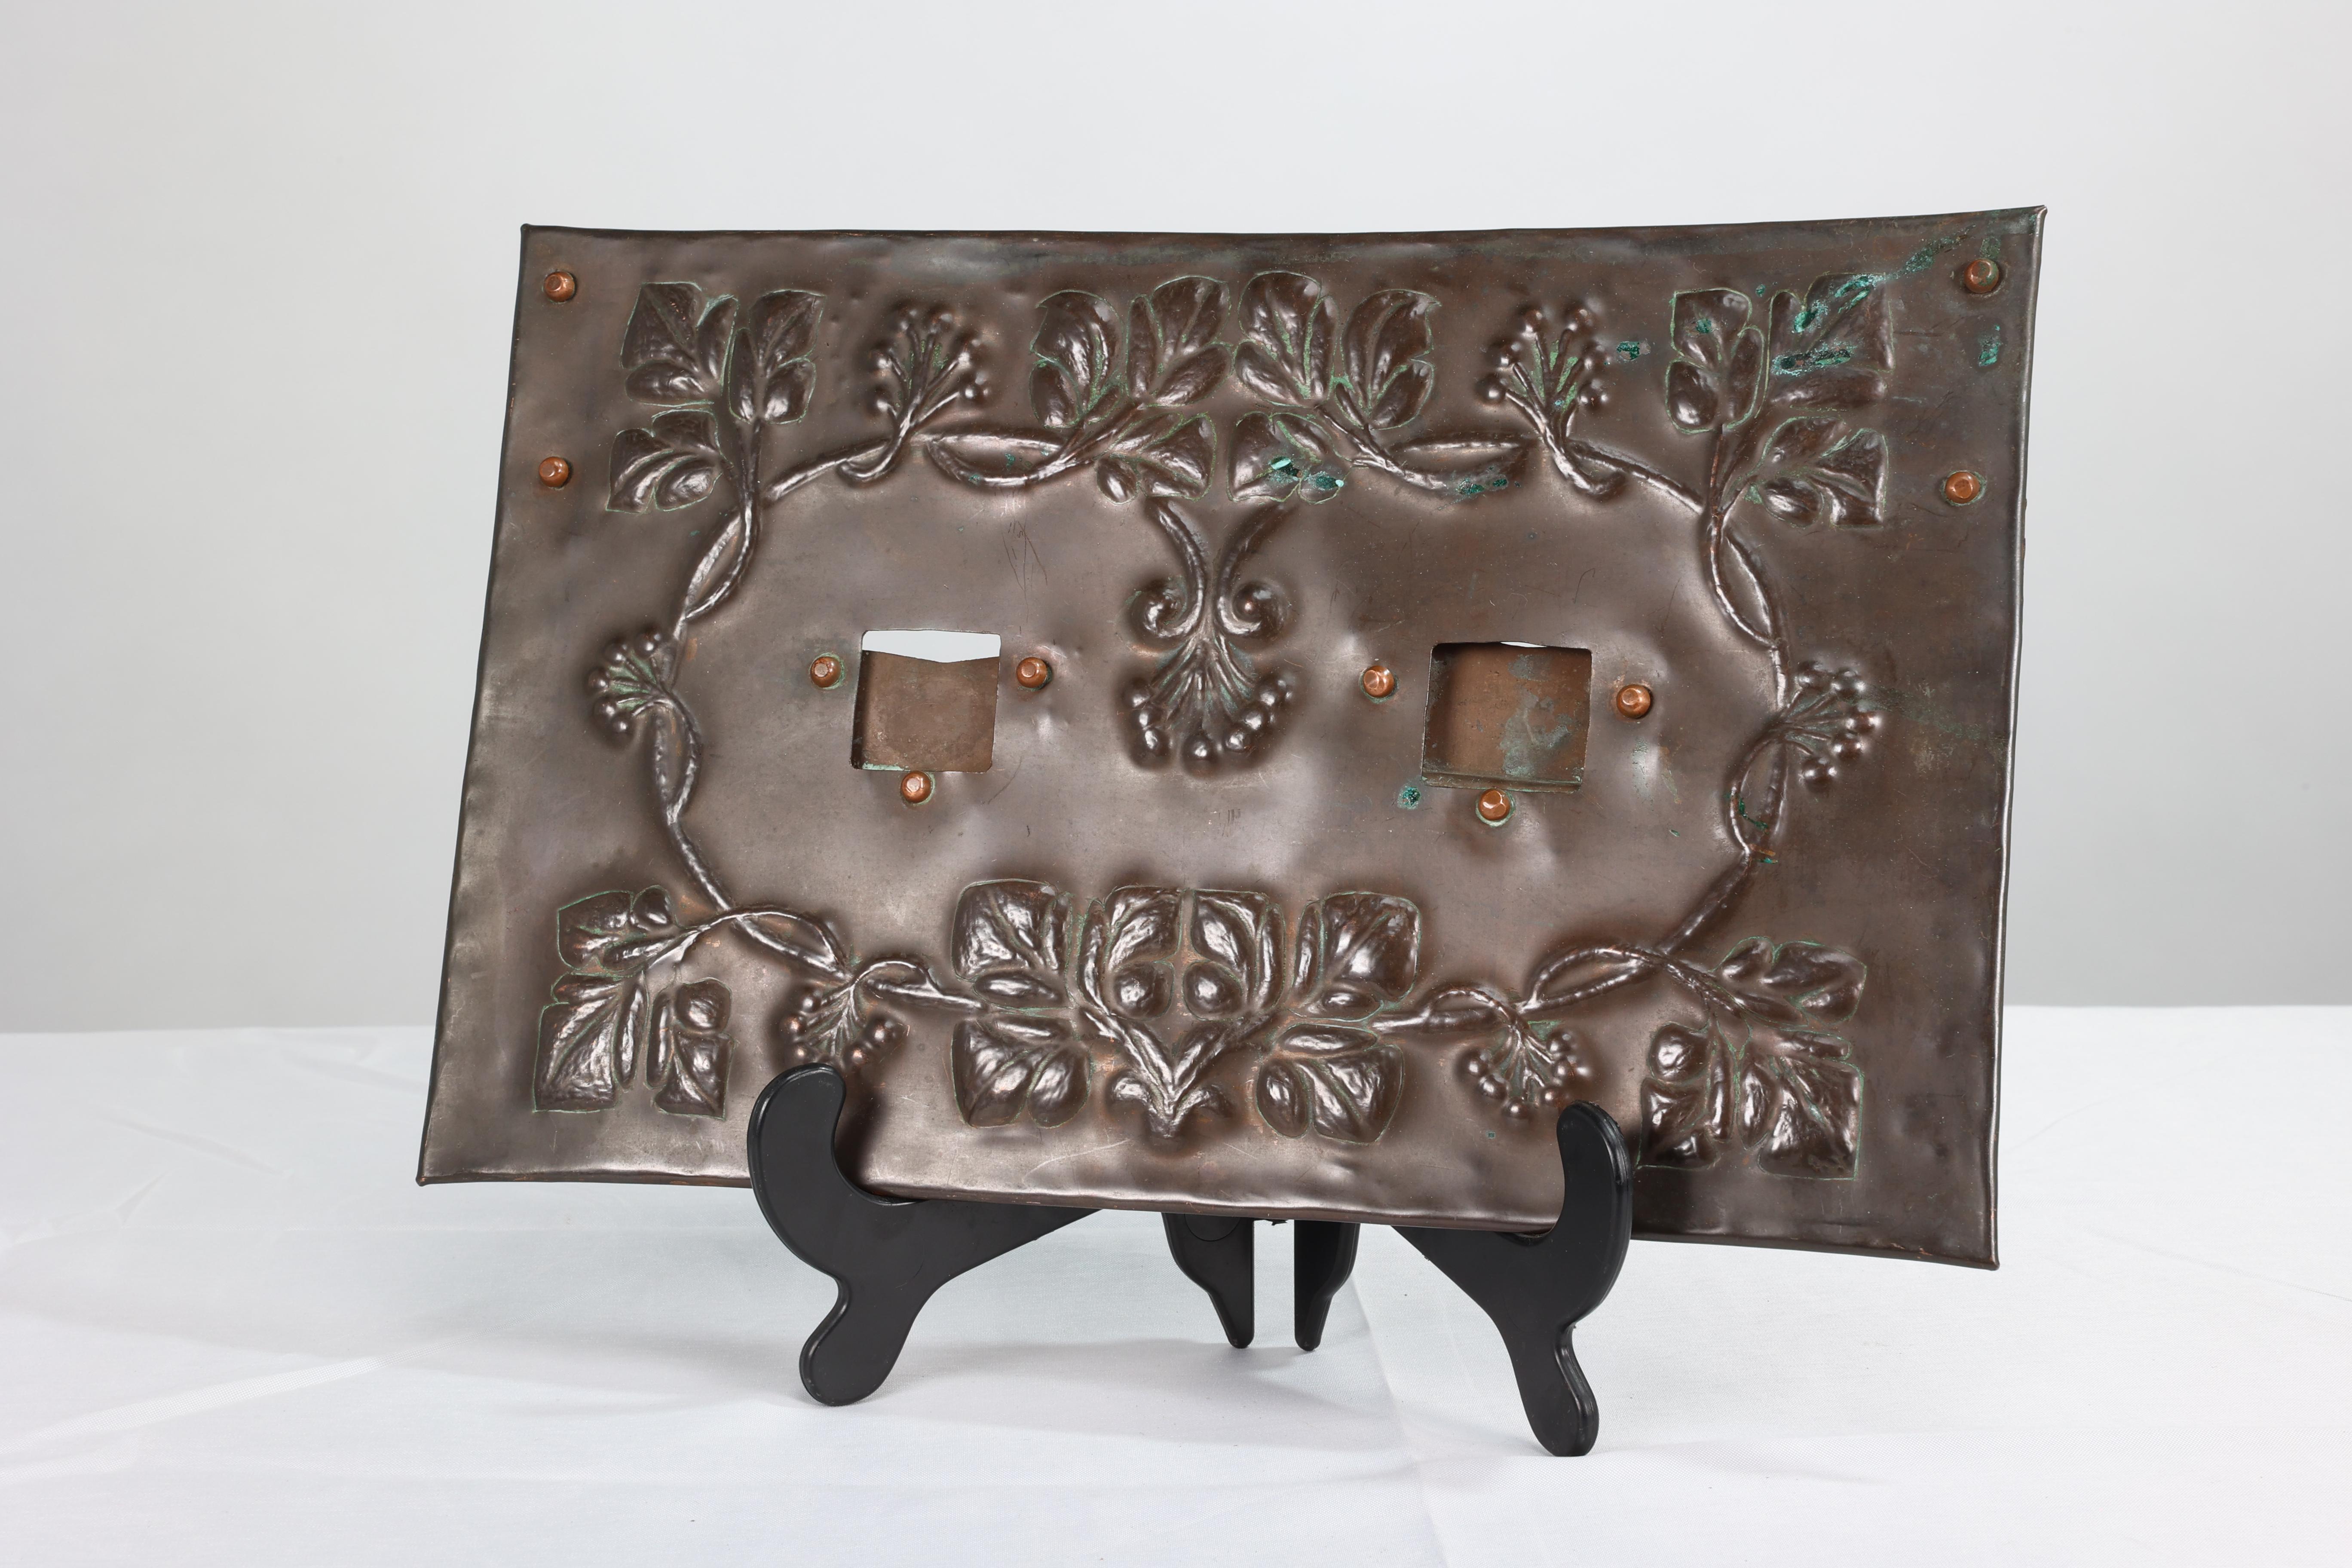 Ein kupferner Hängerahmen im Arts-and-Crafts-Stil mit handgeformtem Blumendekor aus Blättern und Beeren und kleinen quadratischen Öffnungen für zwei Fotos.